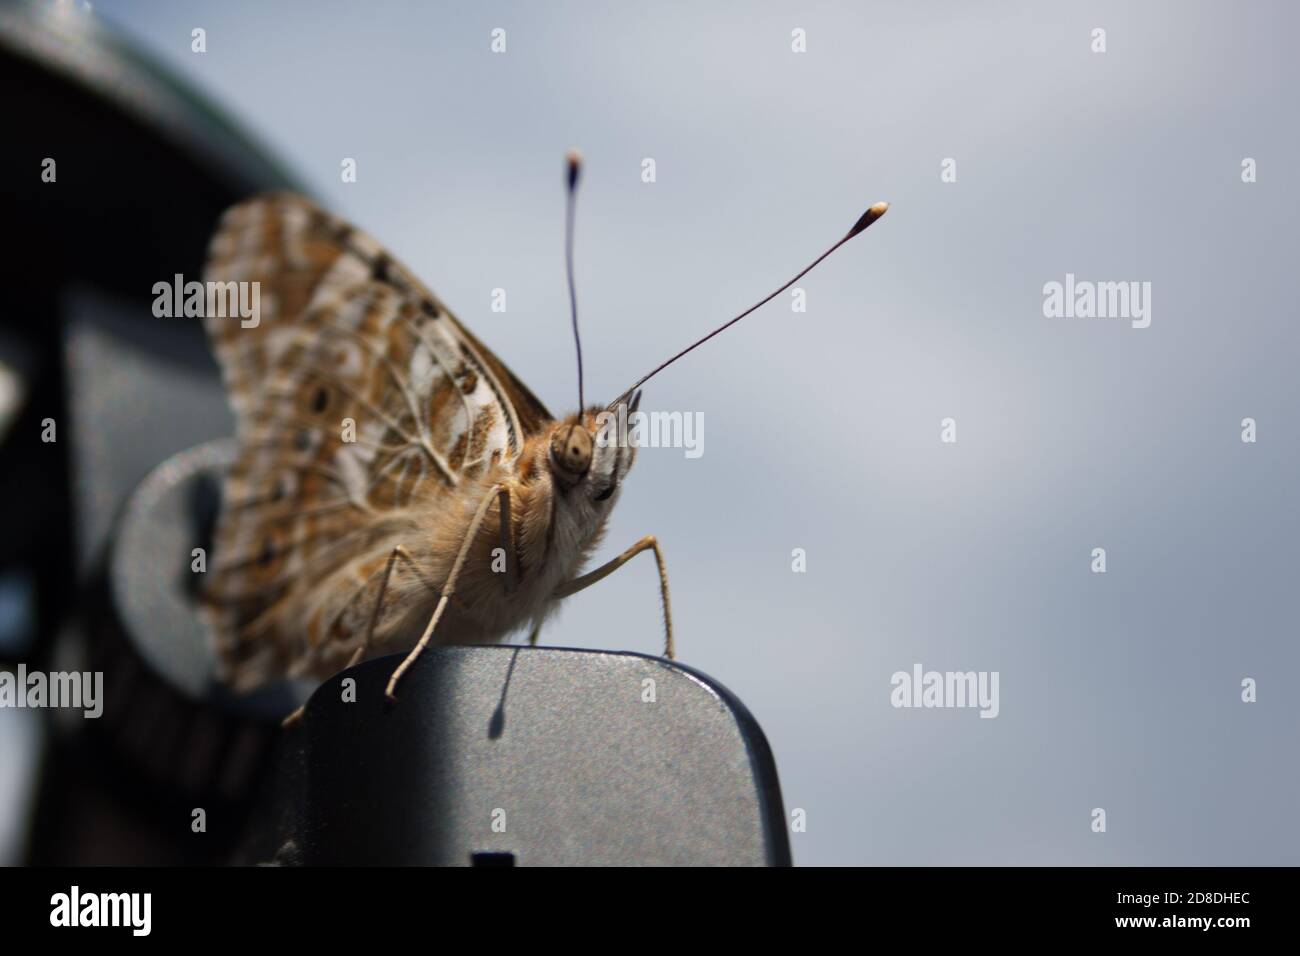 farfalla skipper marrone beige con baffi lunghi e corpo morbido. macro fotografia. Primo piano di Hesperiidea, entomologia, lepidopterologia Foto Stock